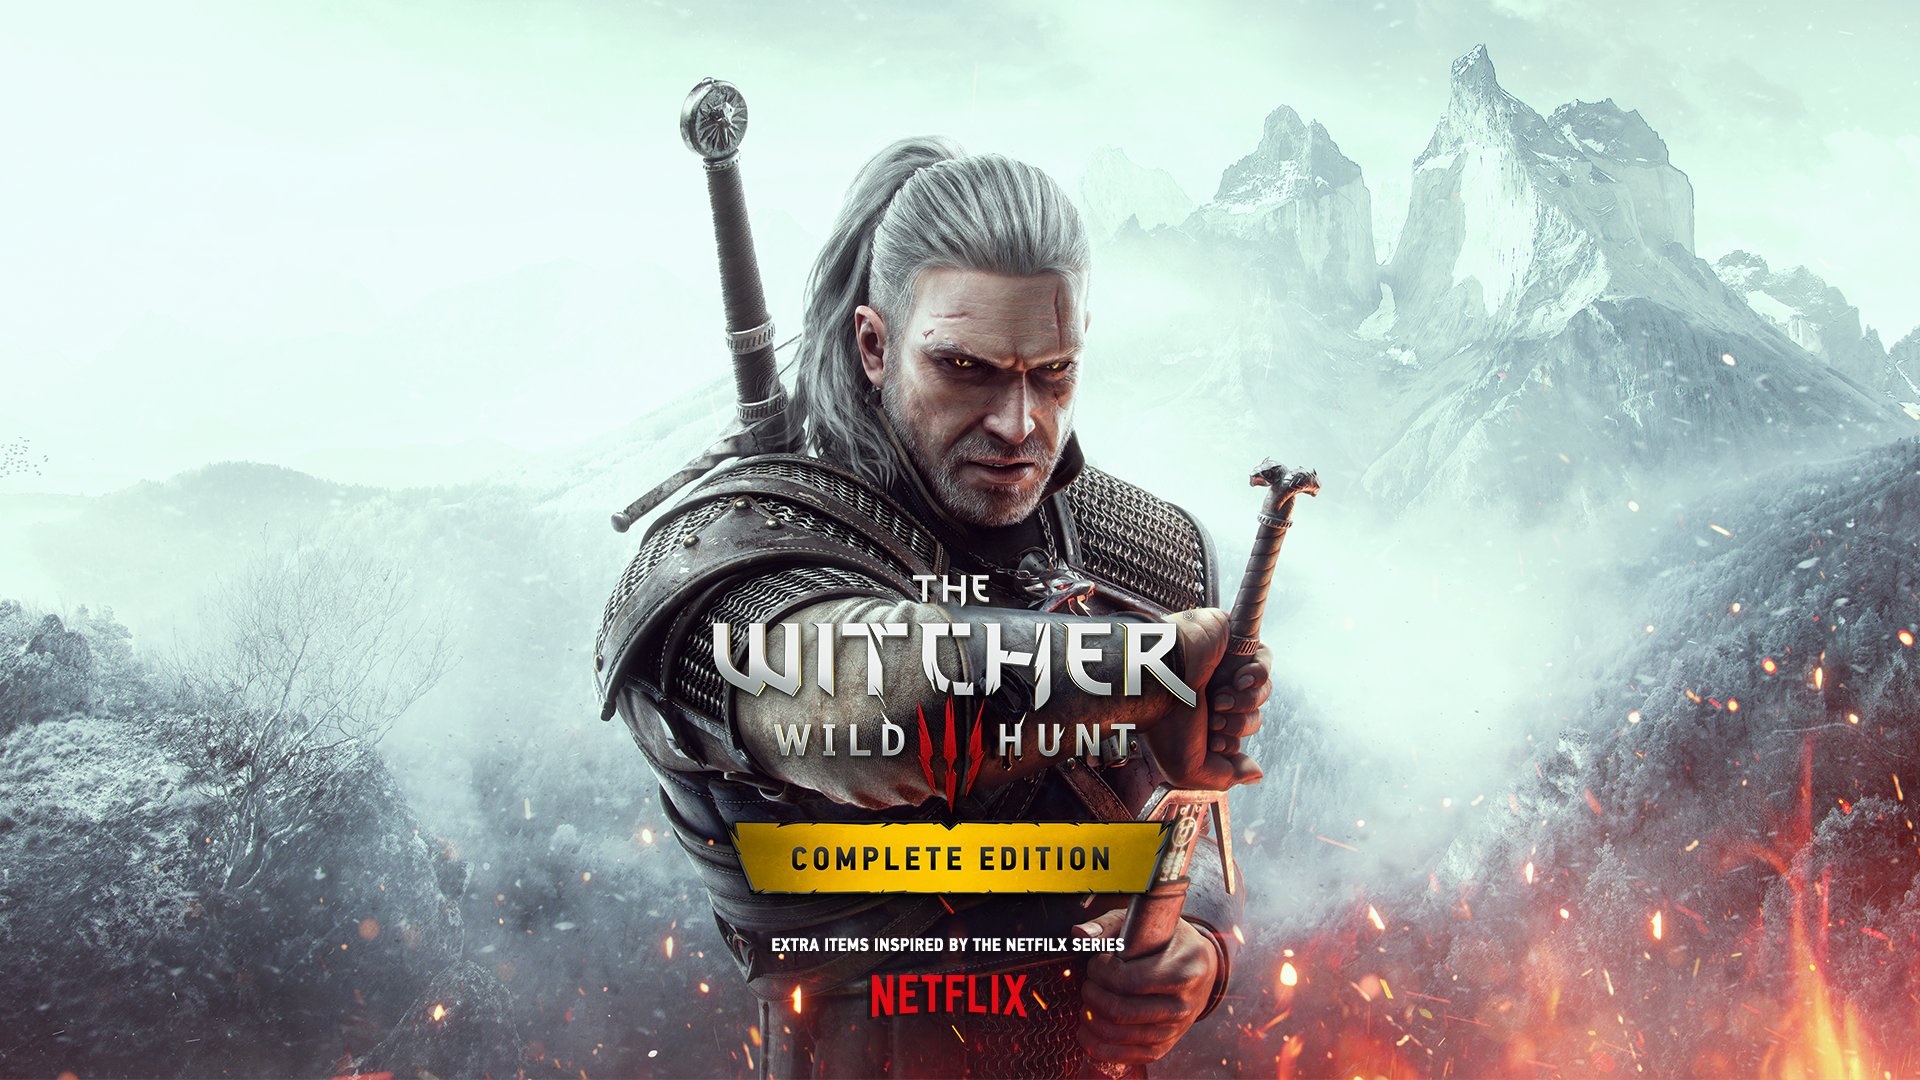 Witcher 3 Getting Next-Gen Upgrade, Free Netflix-Inspired DLCs – Gameranx